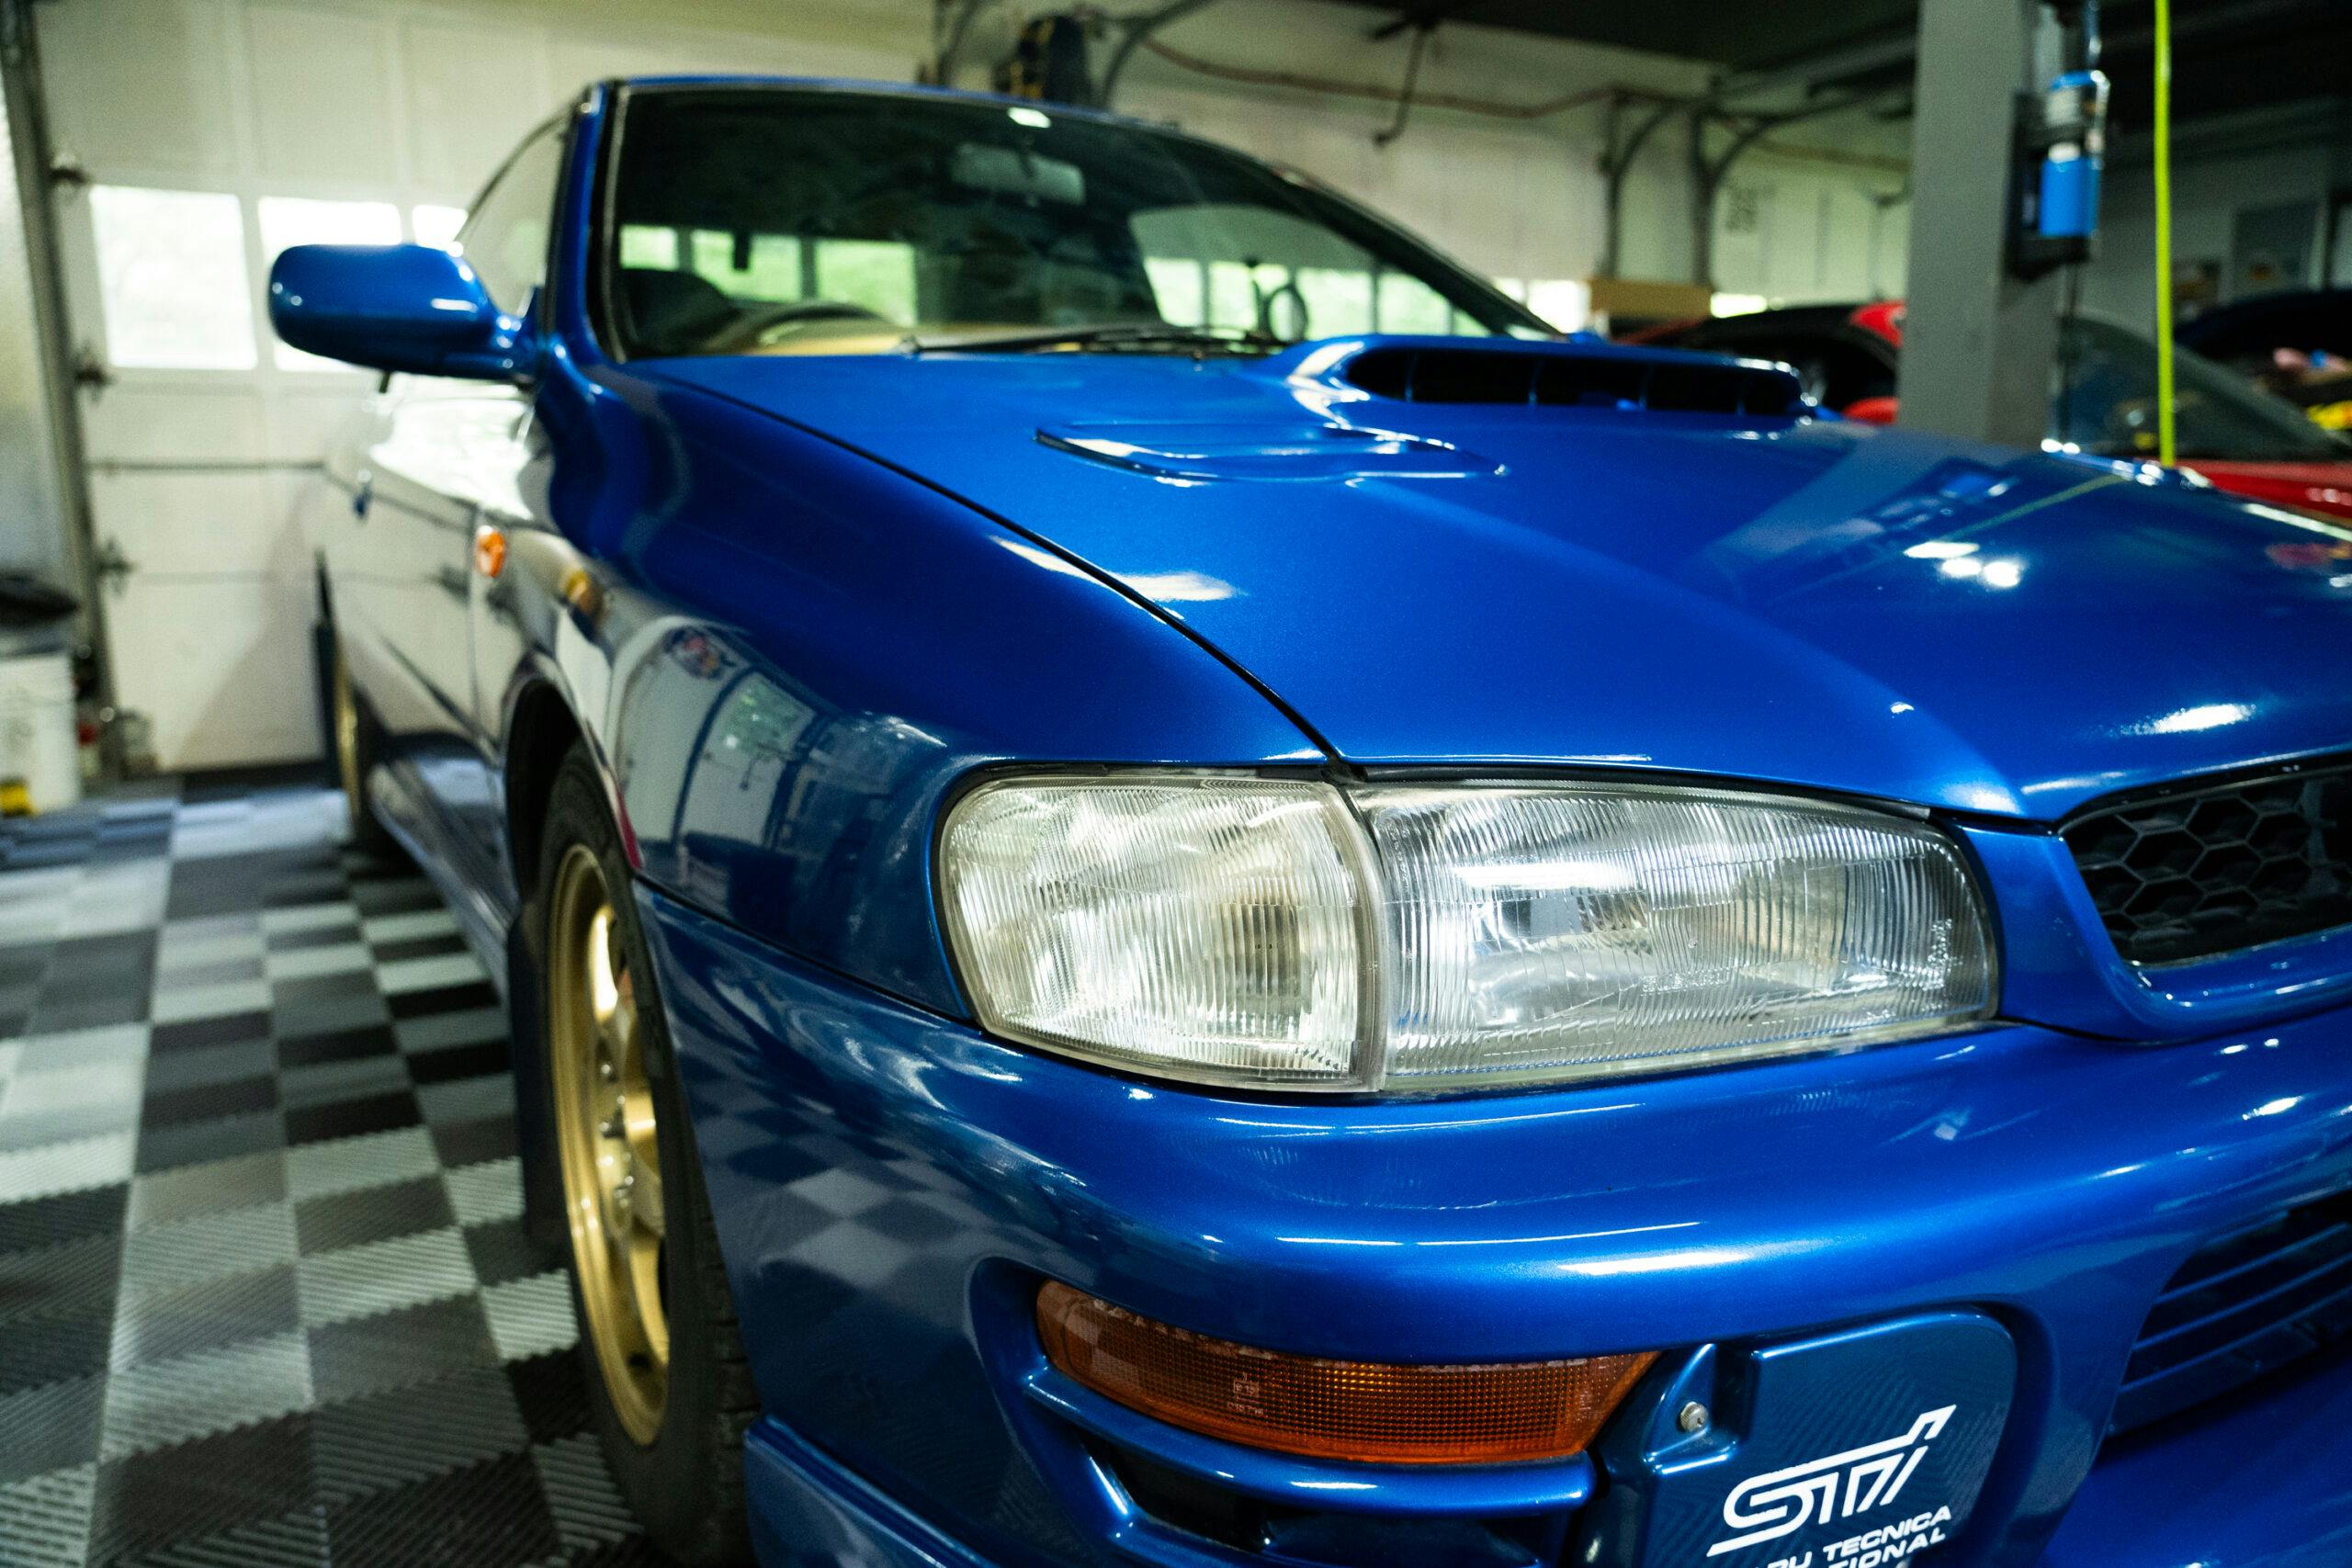 Detailing 1998 Subaru WRX STI Type R headlight